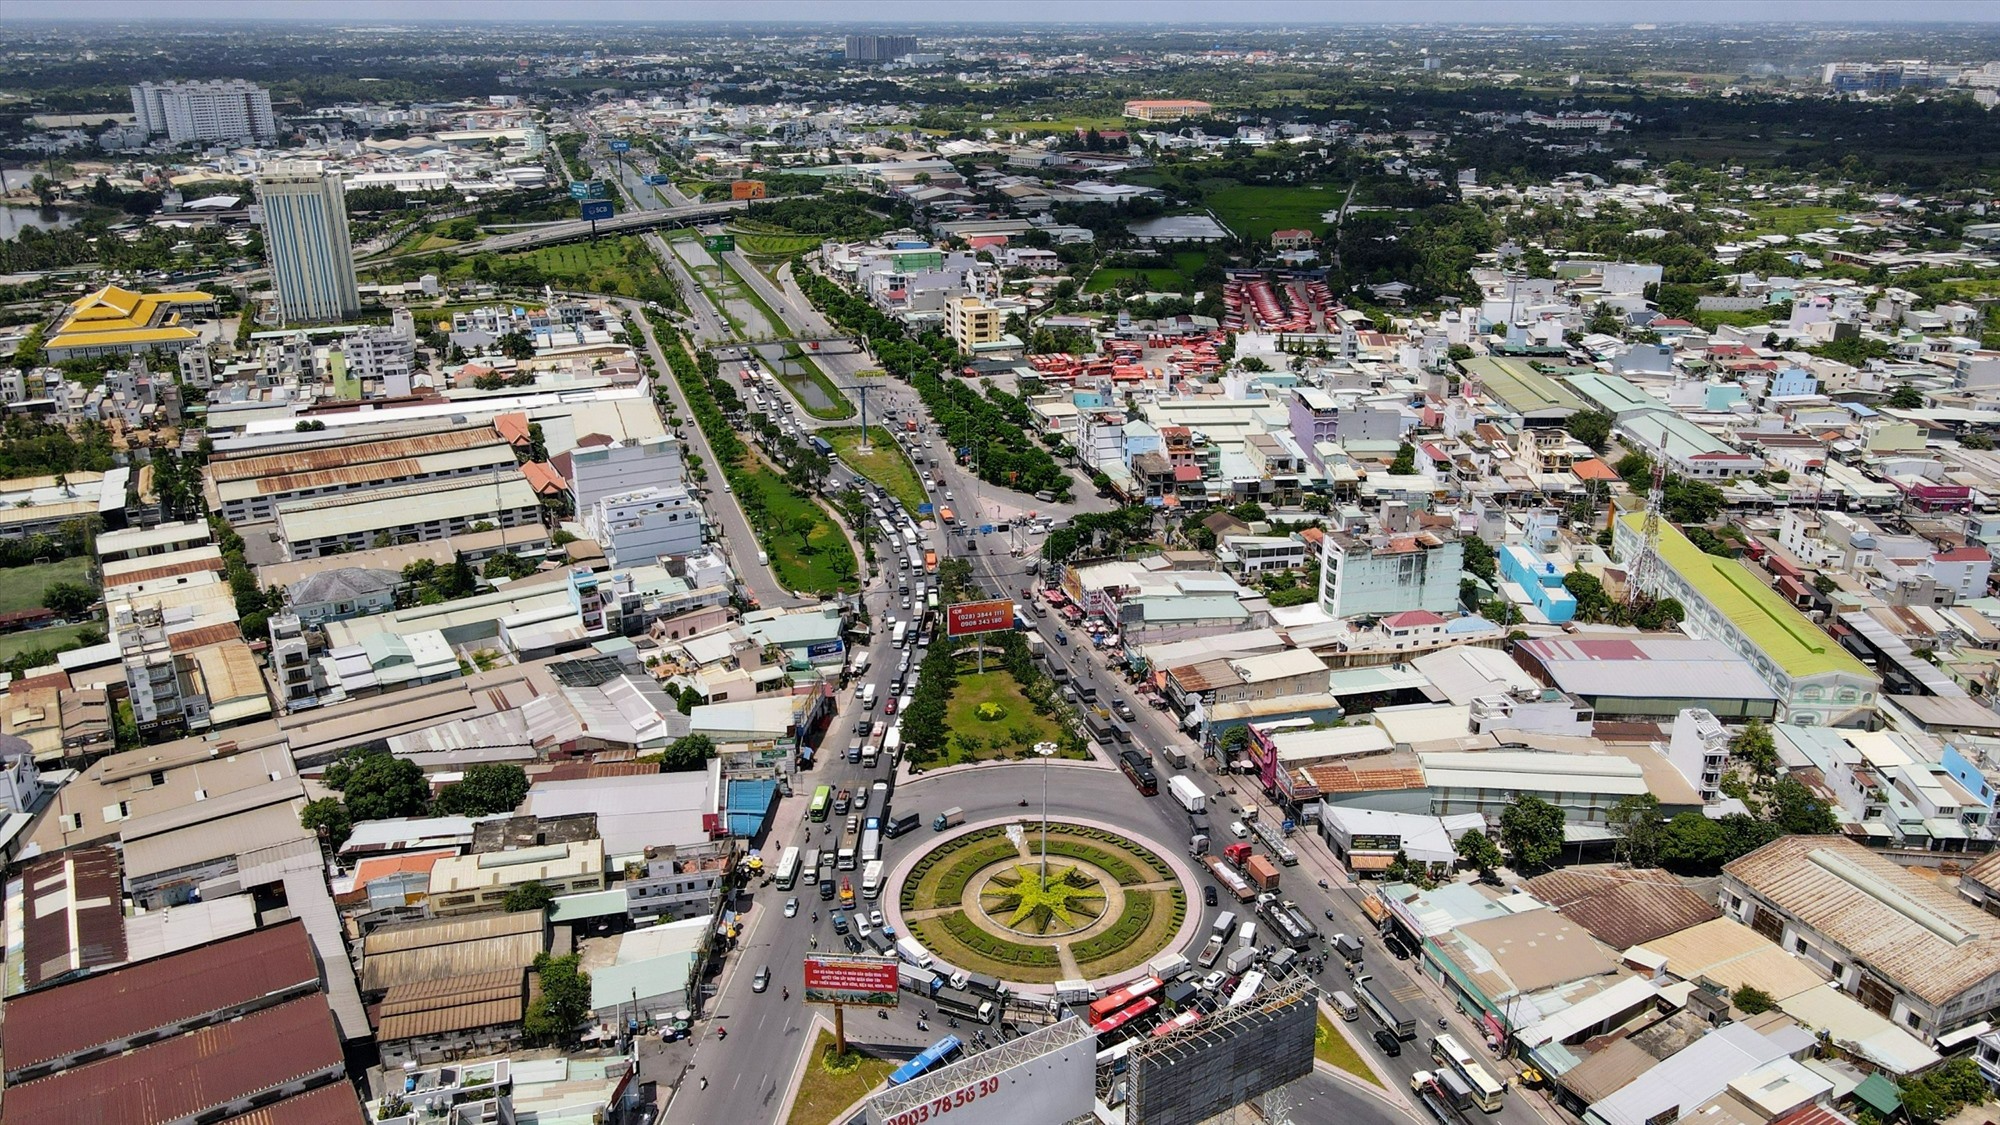 Mới đây Sở Giao thông Vận tải (GTVT) TP Hồ Chí Minh đã chọn 5 dự án giao thông cấp bách mang tính chất liên kết vùng trong số 107 tuyến đường phù hợp triển khai hình thức đầu tư BOT trên đường hiện hữu theo Nghị quyết 98, ưu tiên thực hiện trong giai đoạn 2023 – 2030.